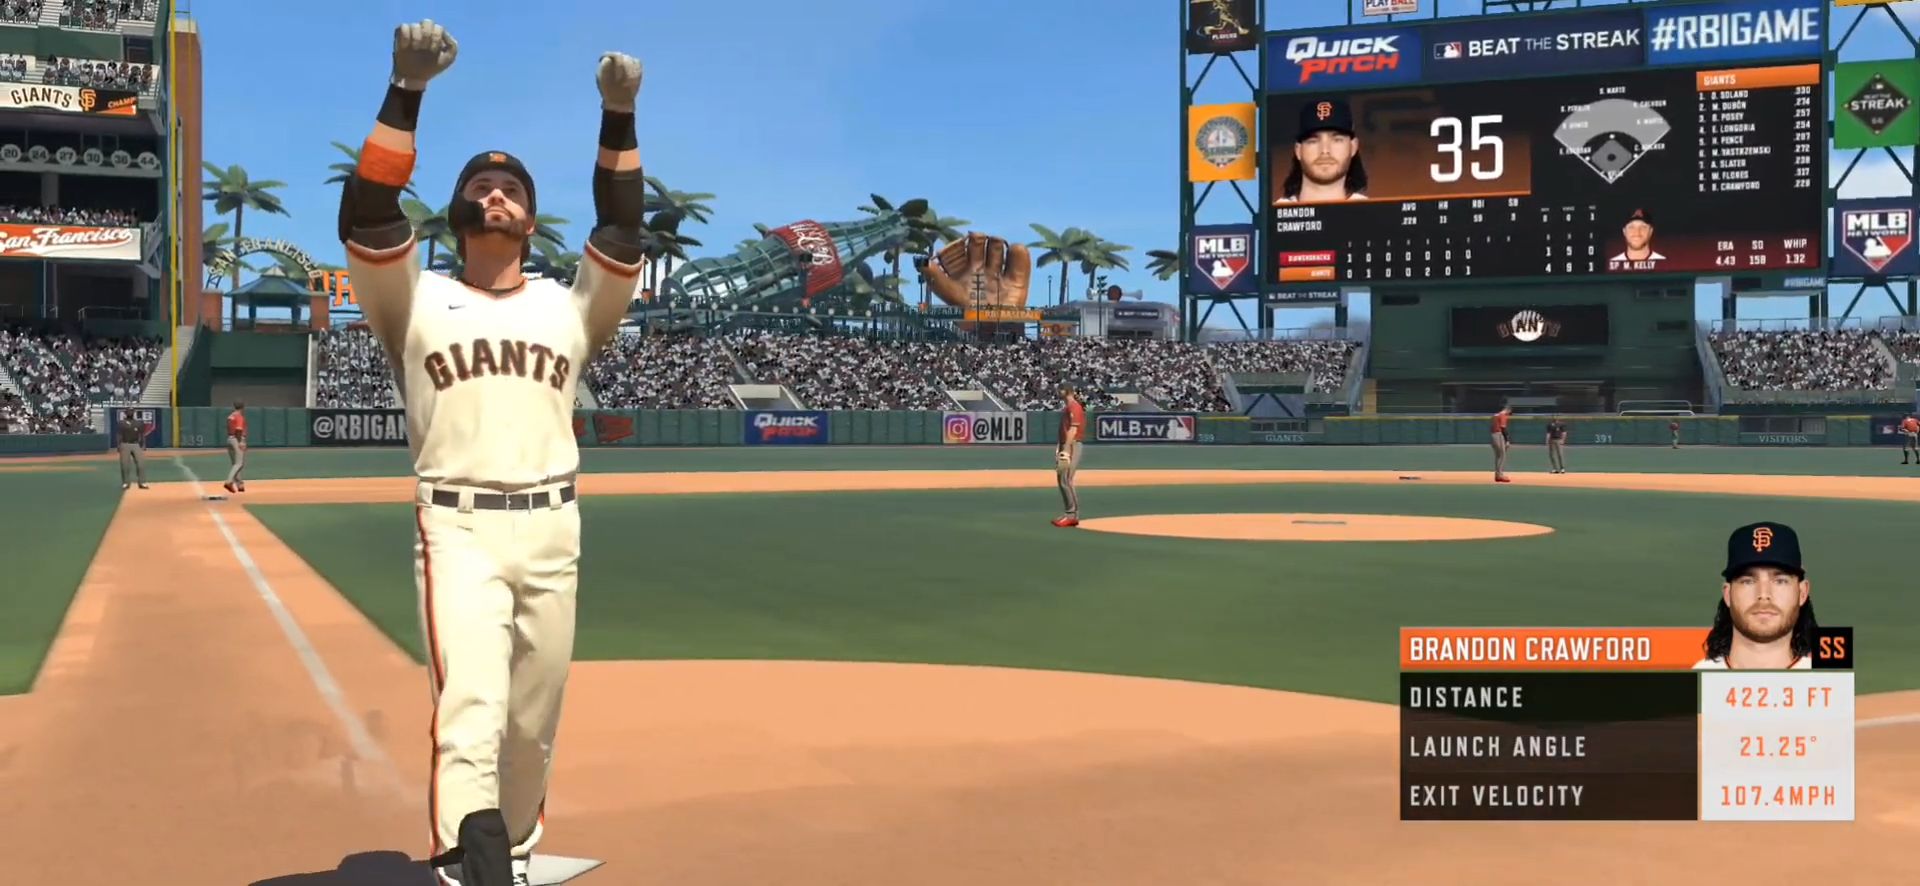 R.B.I. Baseball 20 screenshot 1